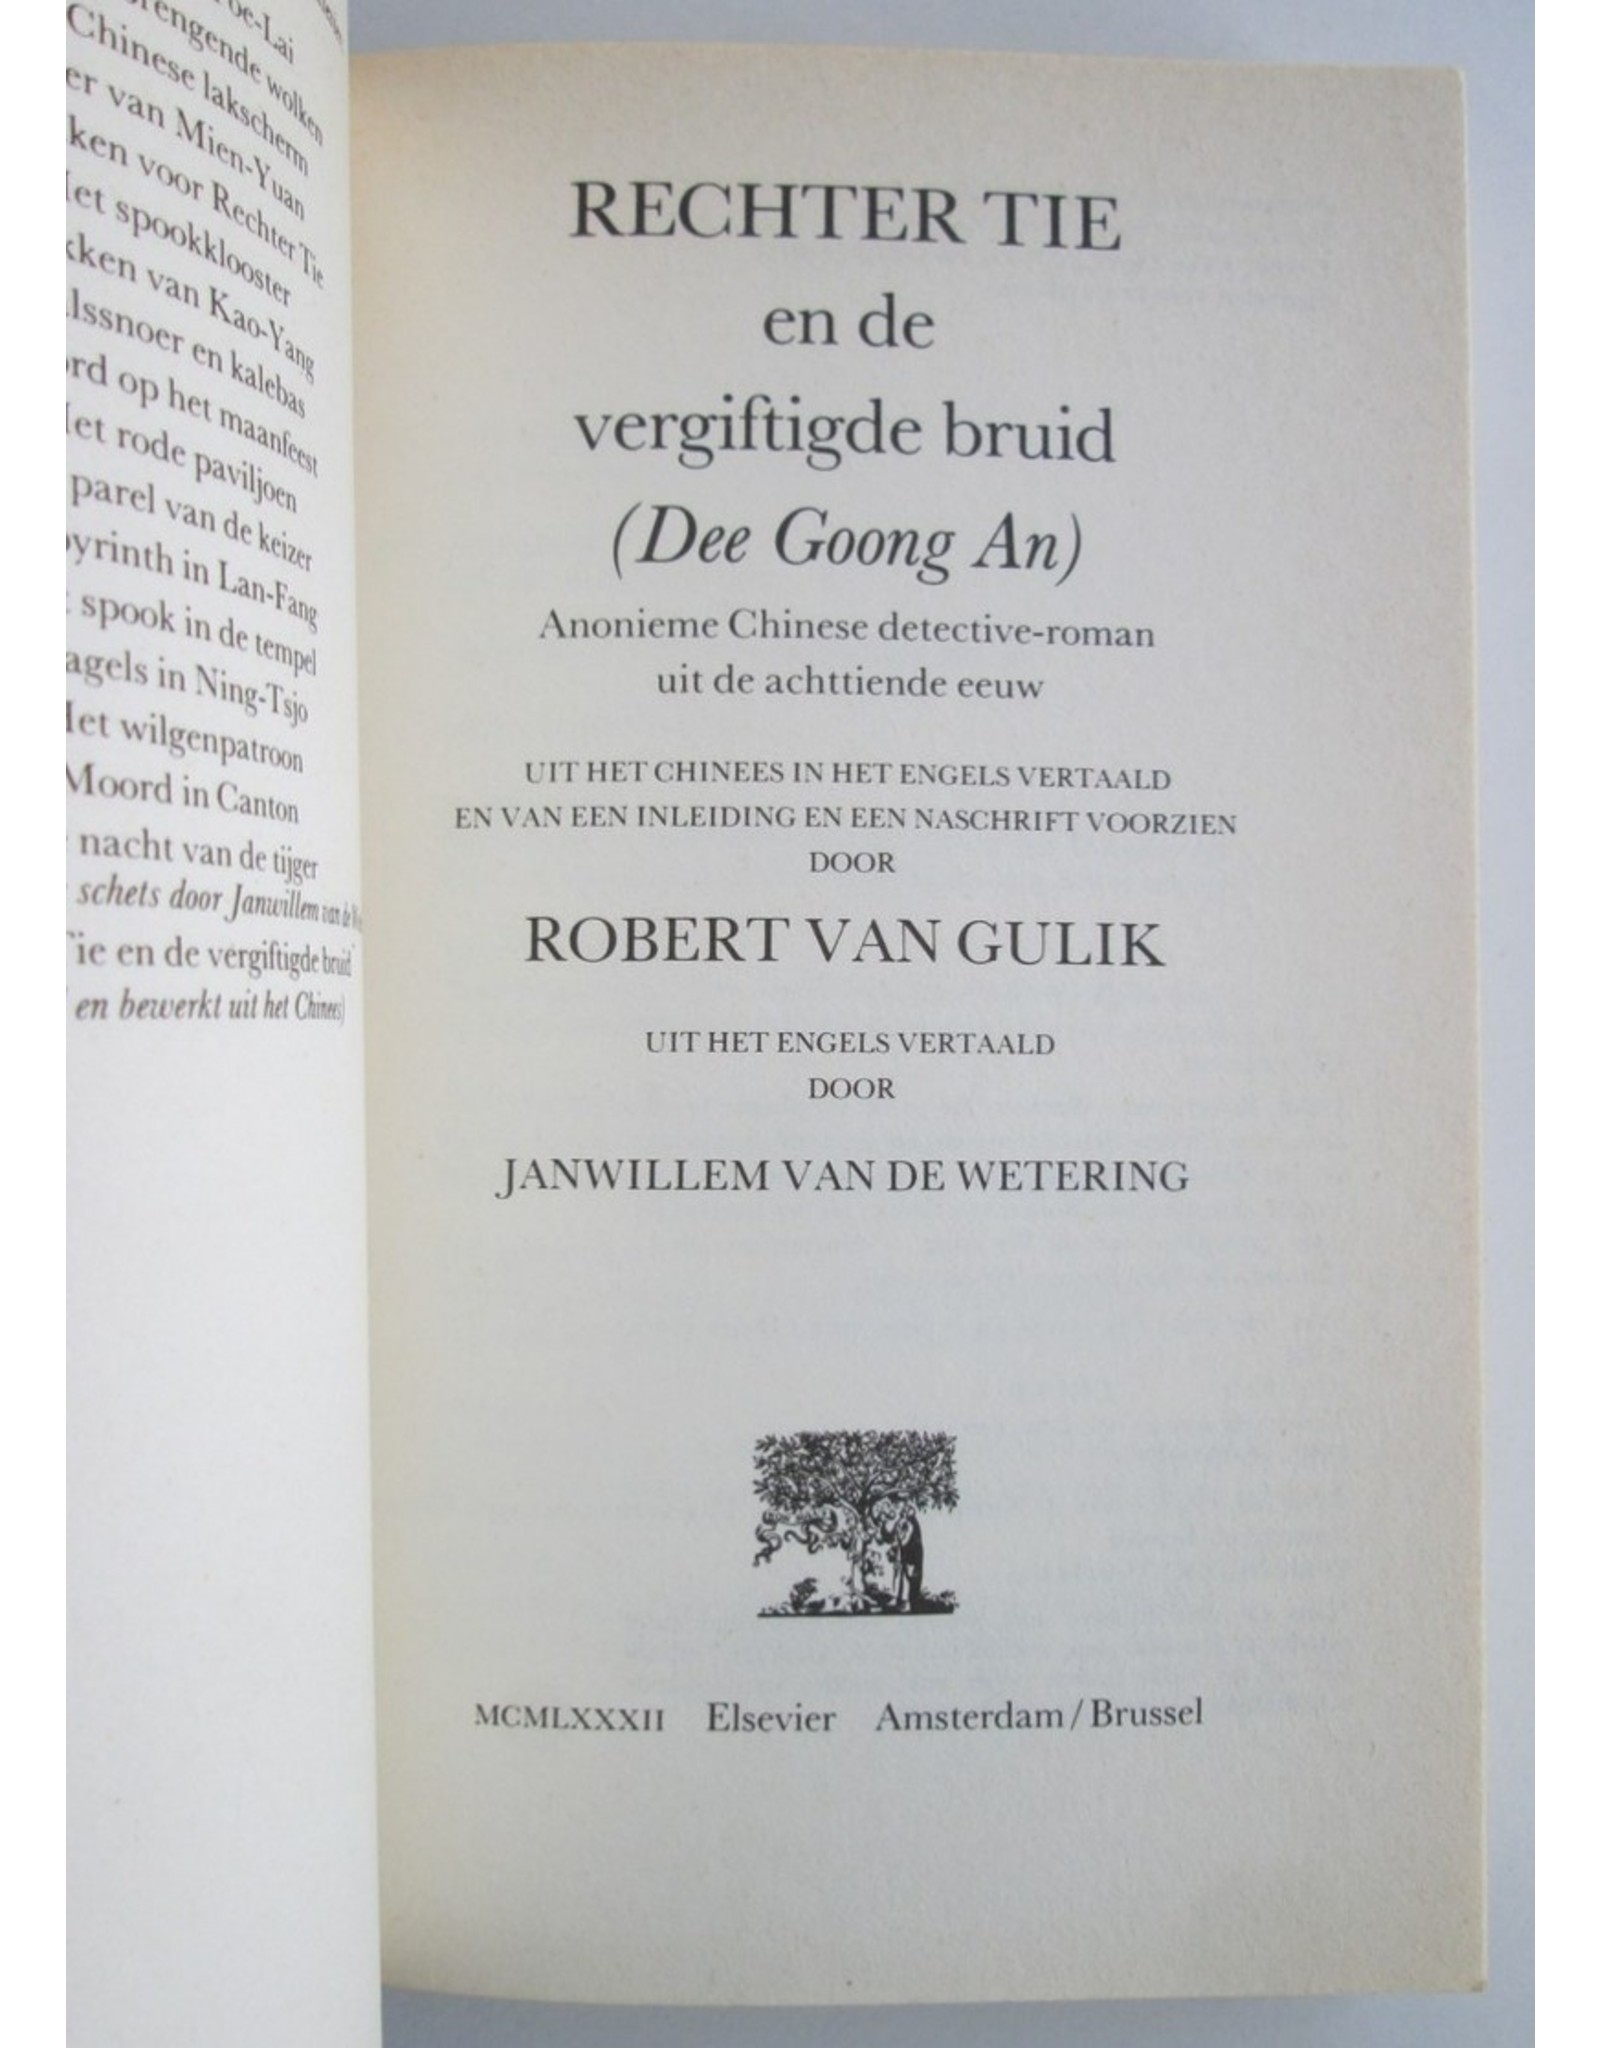 Robert van Gulik - Rechter Tie en de vergiftigde bruid (Dee Goong An). Anonieme Chinese detective-roman uit de achttiende eeuw. [...]